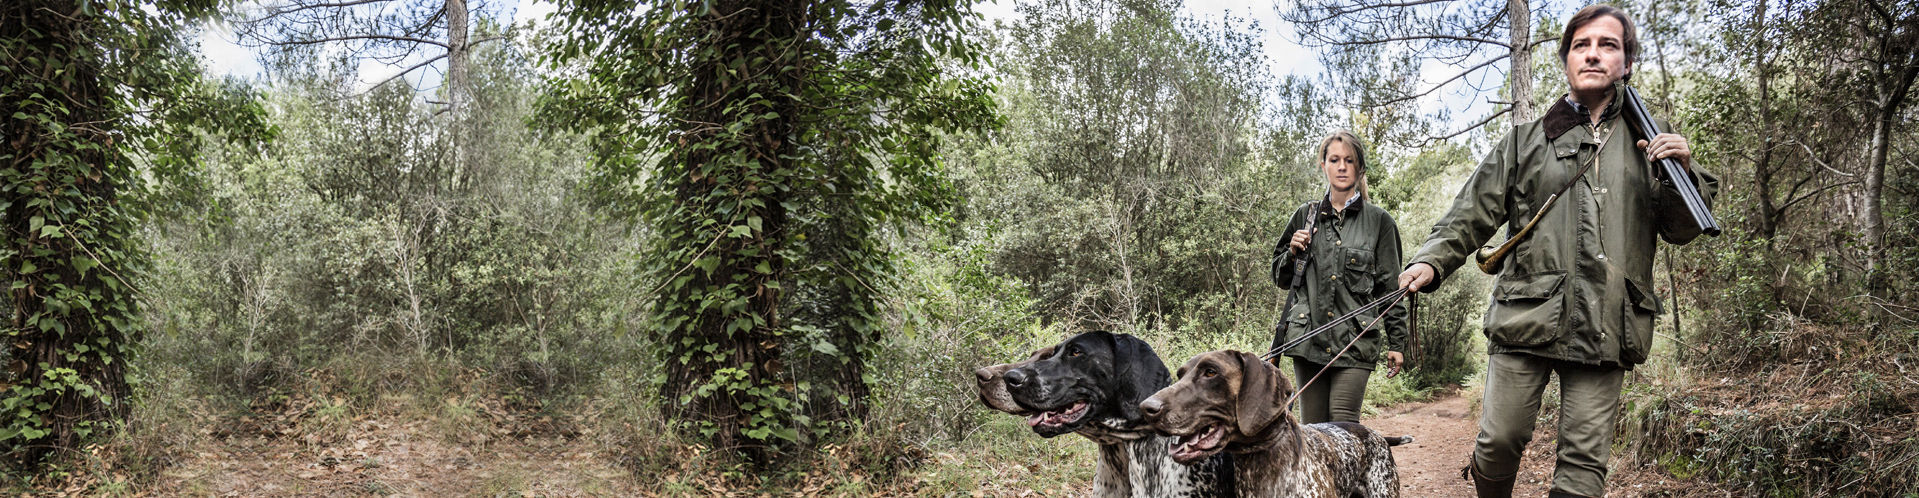 Eine Jägerin und ein Jäger gehen mit ihrer Hundemeute einen Waldweg entlang